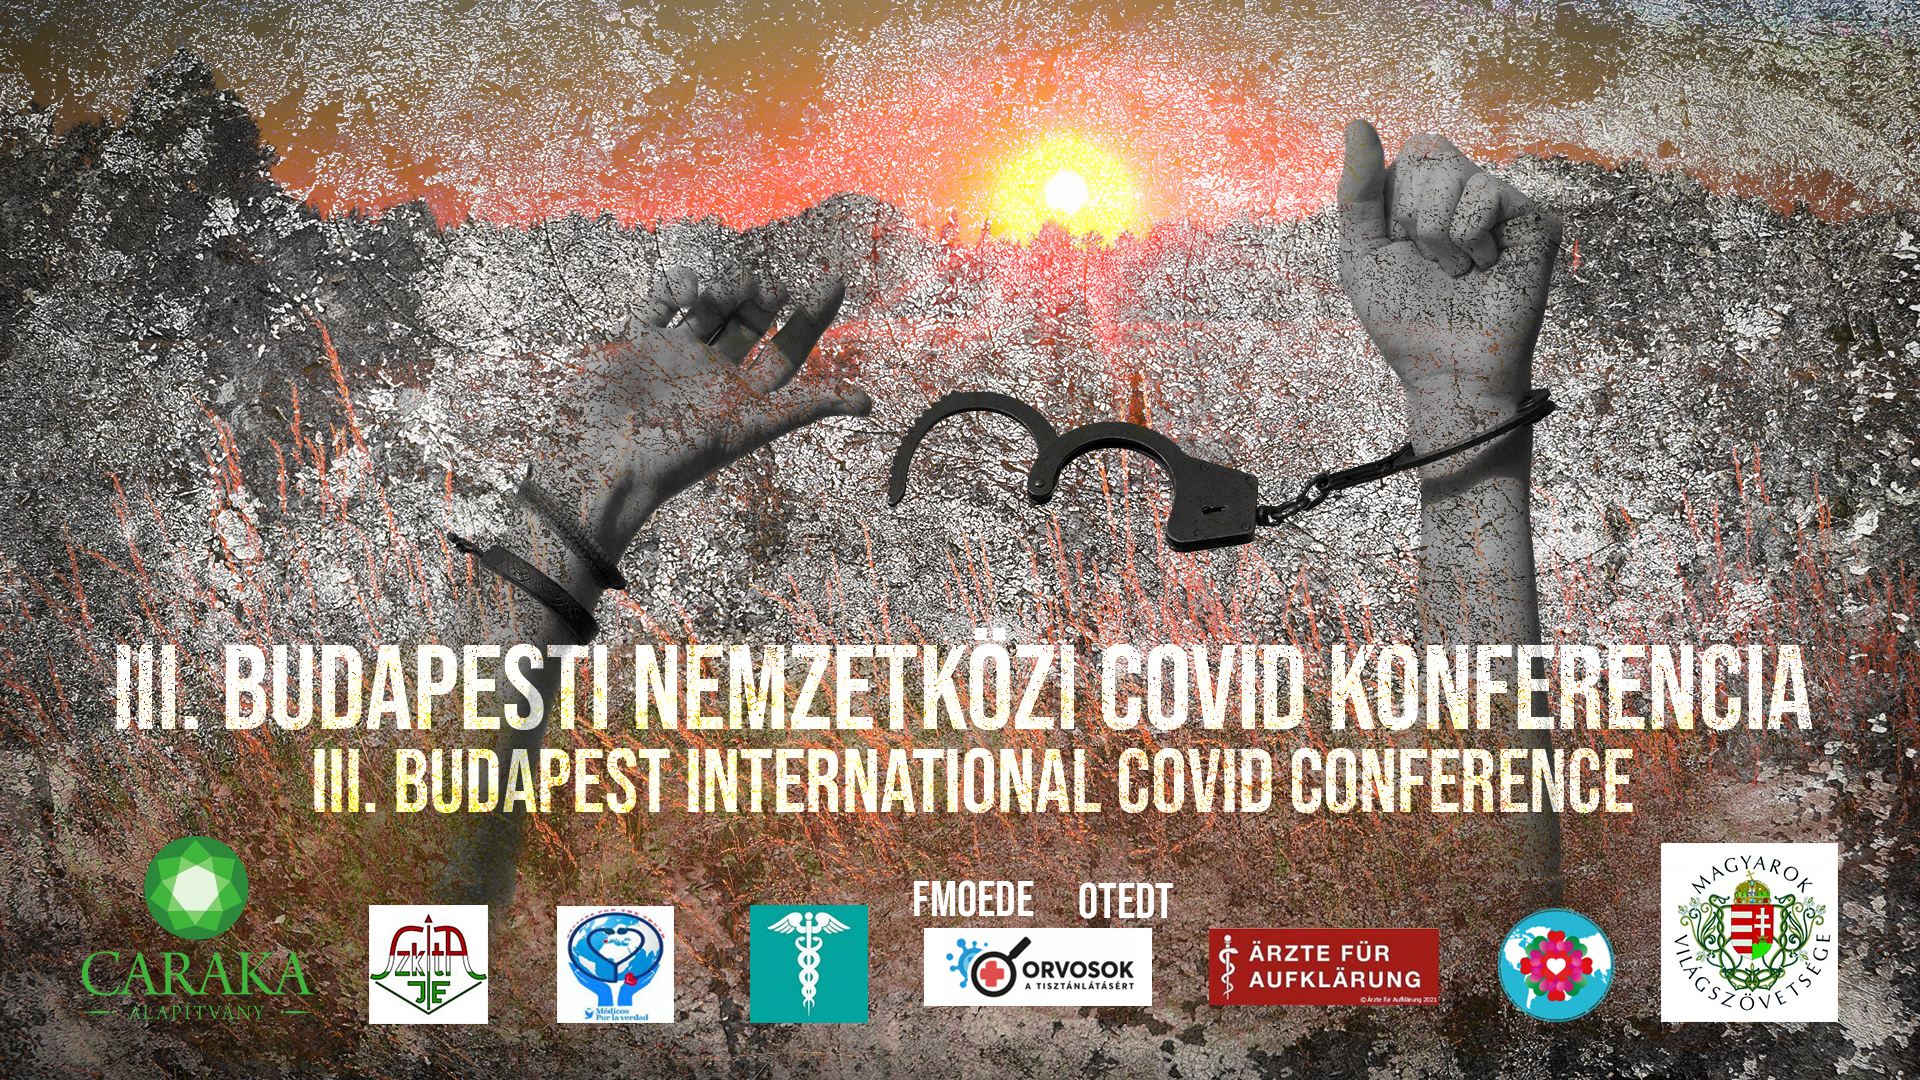 邀请参加非凡的新闻发布会 - III。 布达佩斯新冠肺炎会议